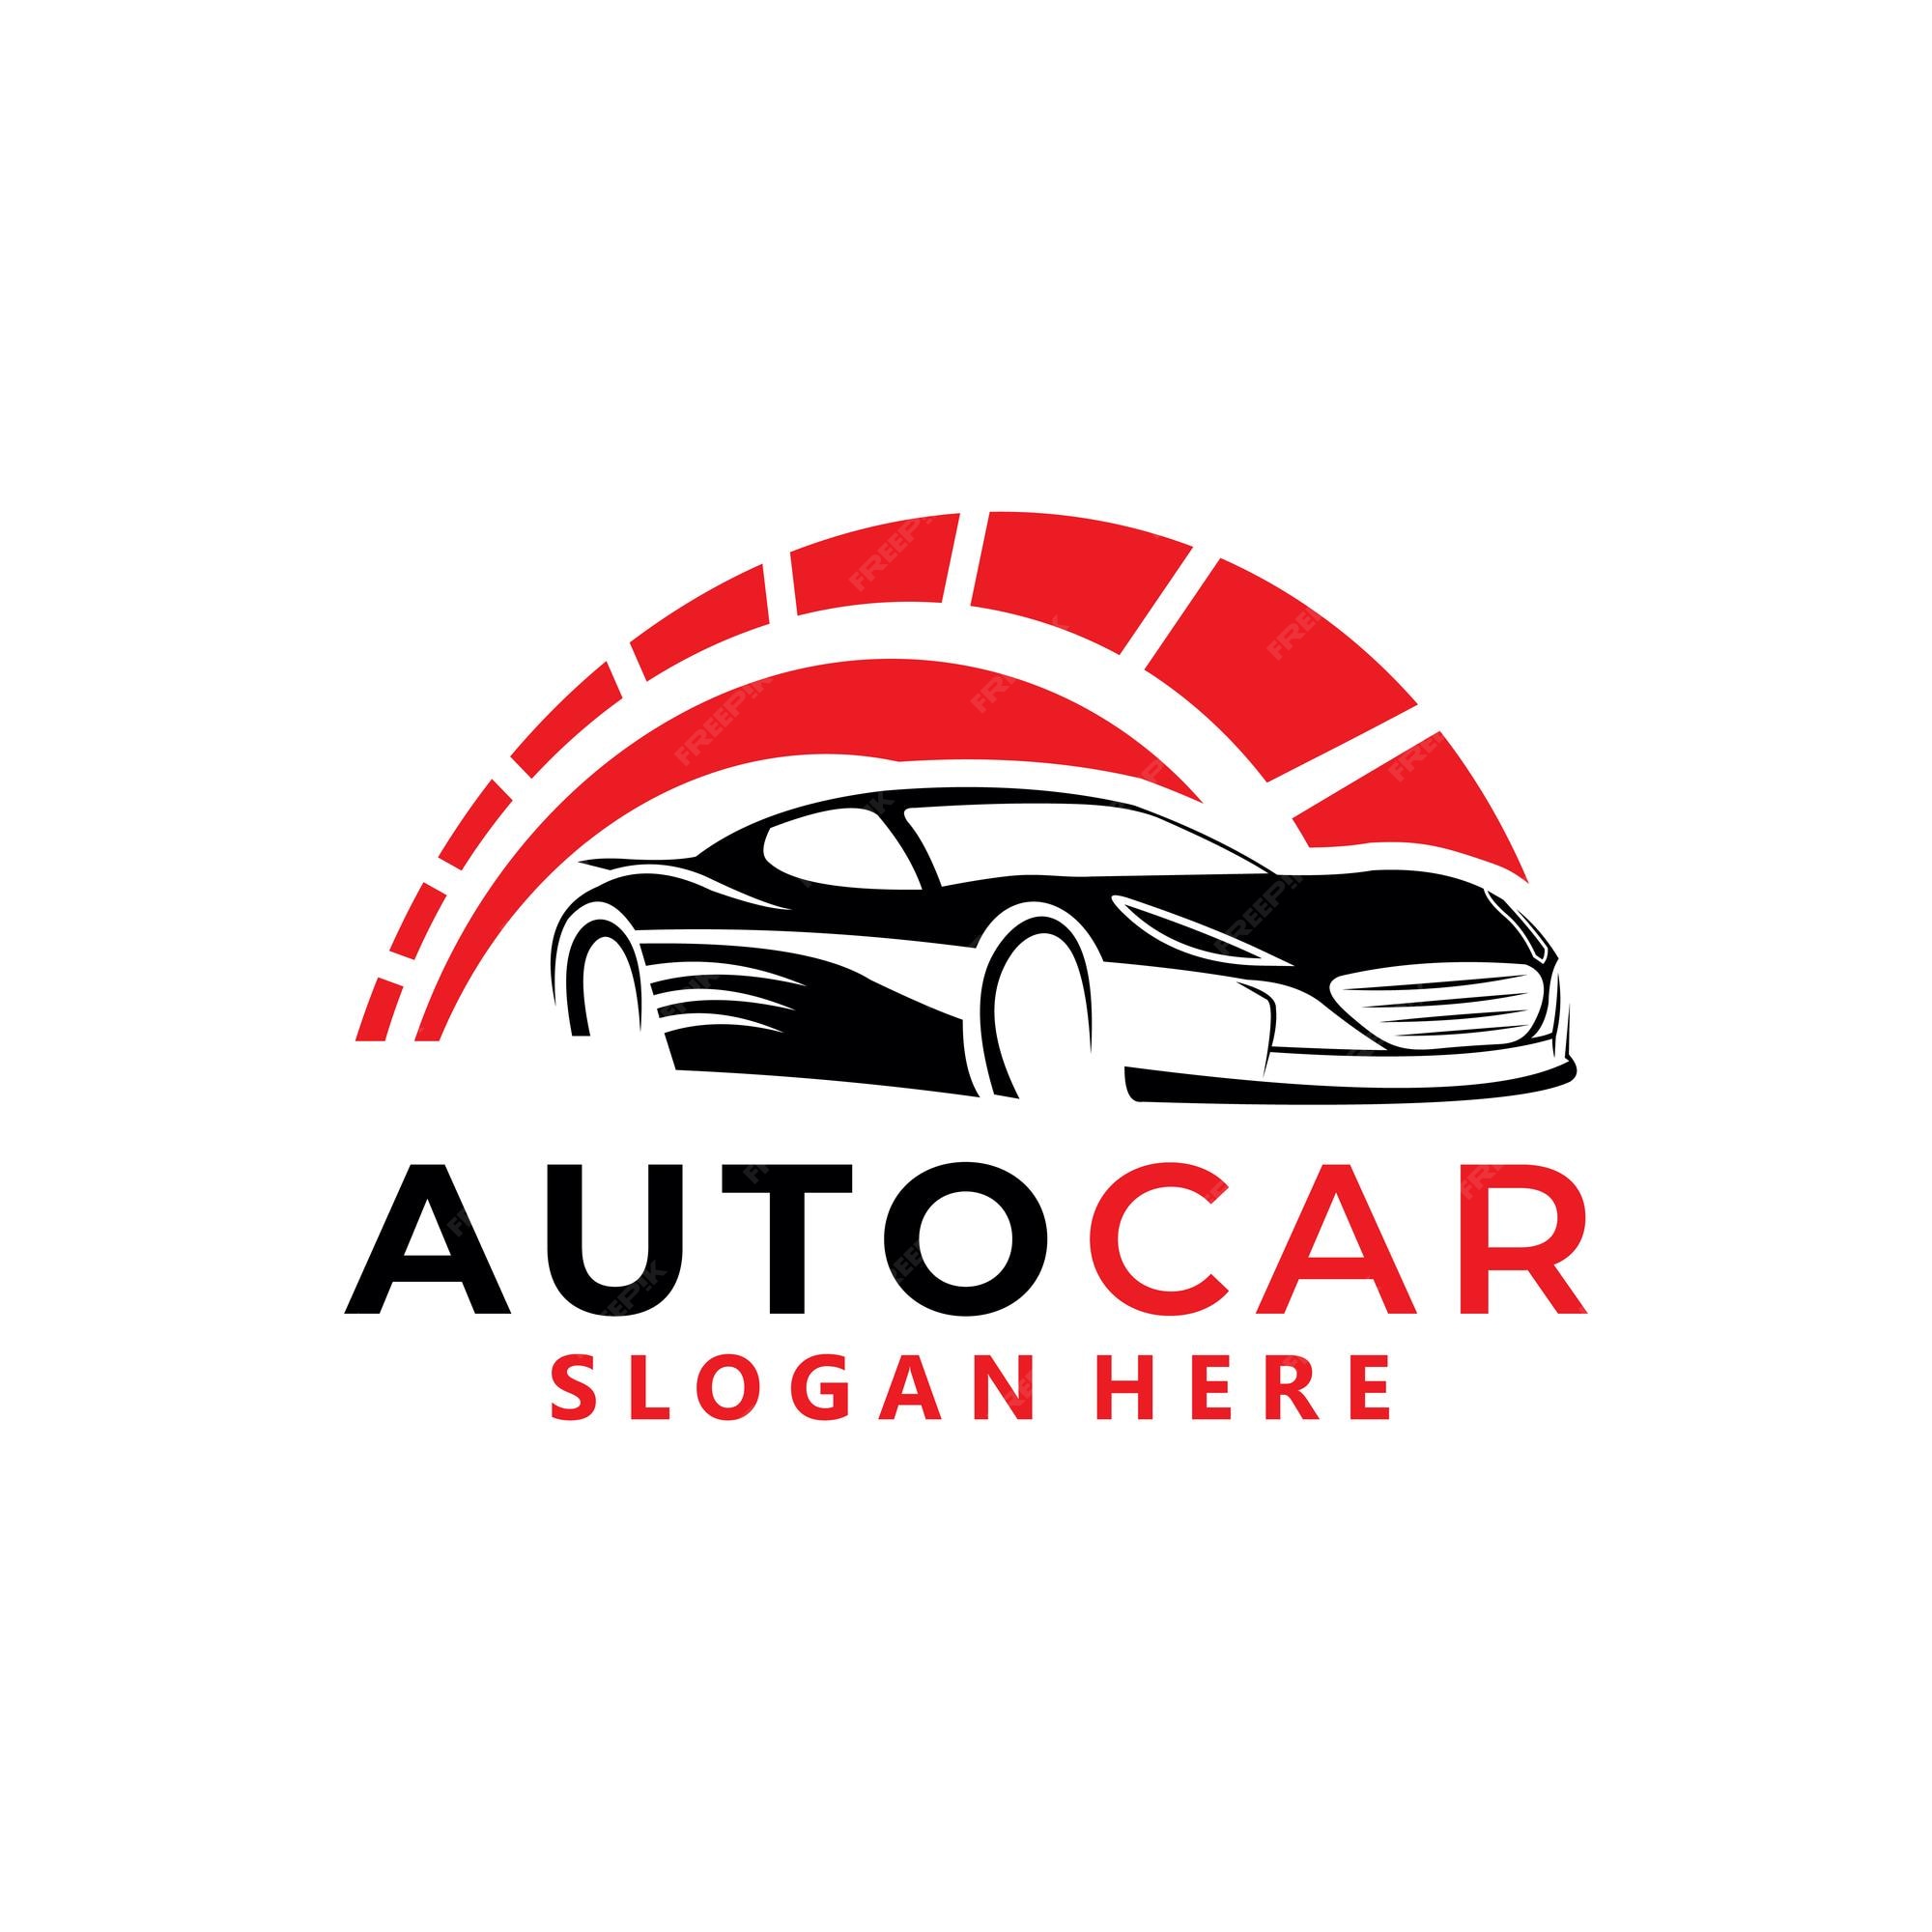 Premium Vector | Auto car logo vector design template